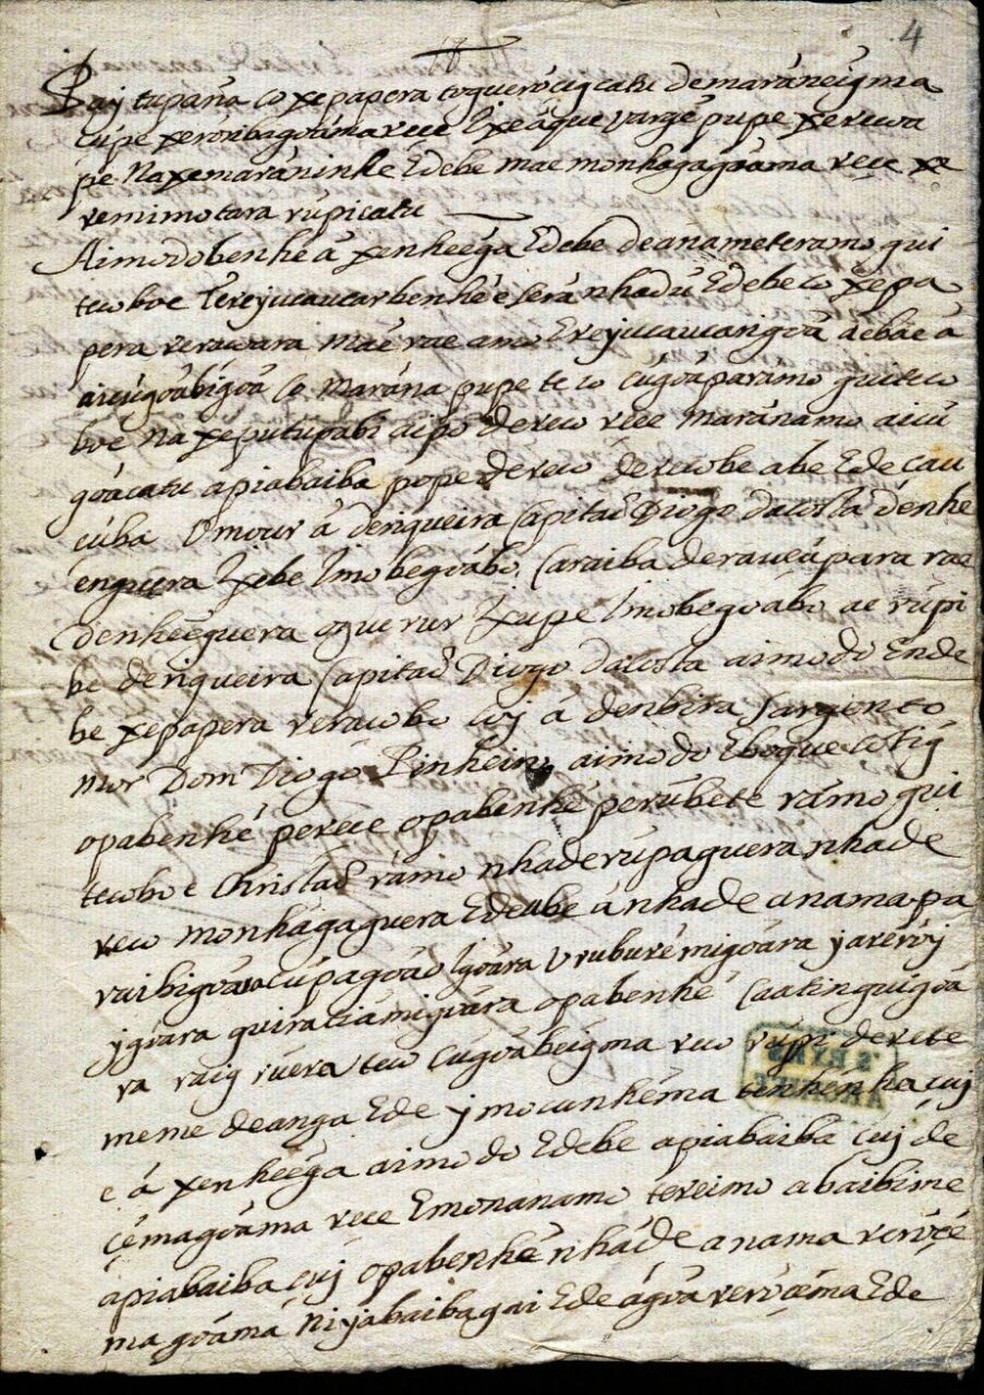 Carta em tupi de Felipe Camarão a Pedro Poti, de 4 de outubro de 1645 — Foto: Arquivo pessoal/Eduardo Navarro